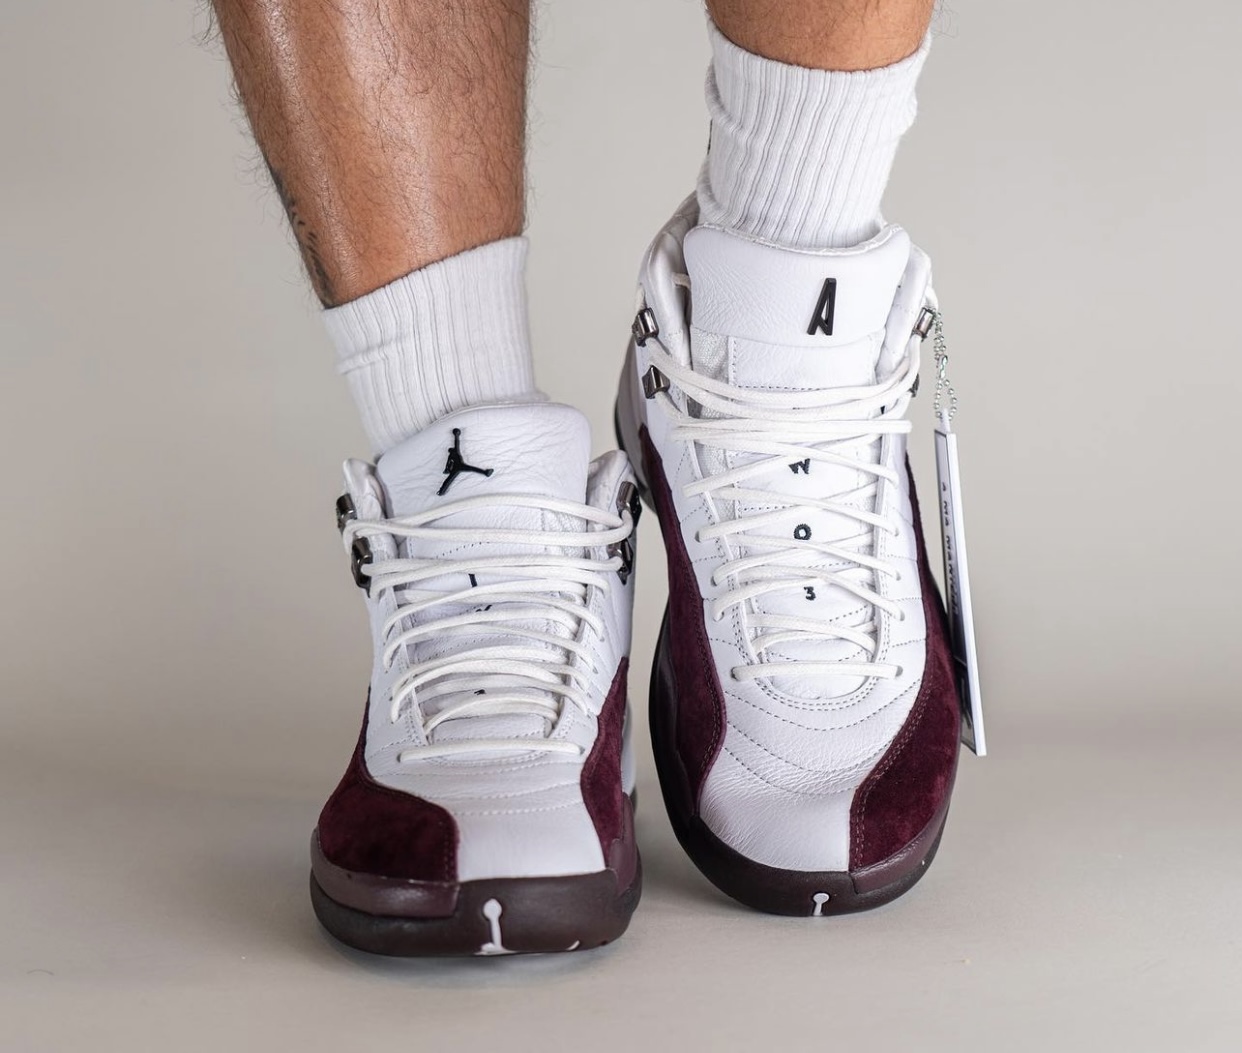 A Ma Maniére x Air Jordan 12“白色”的脚上照片
